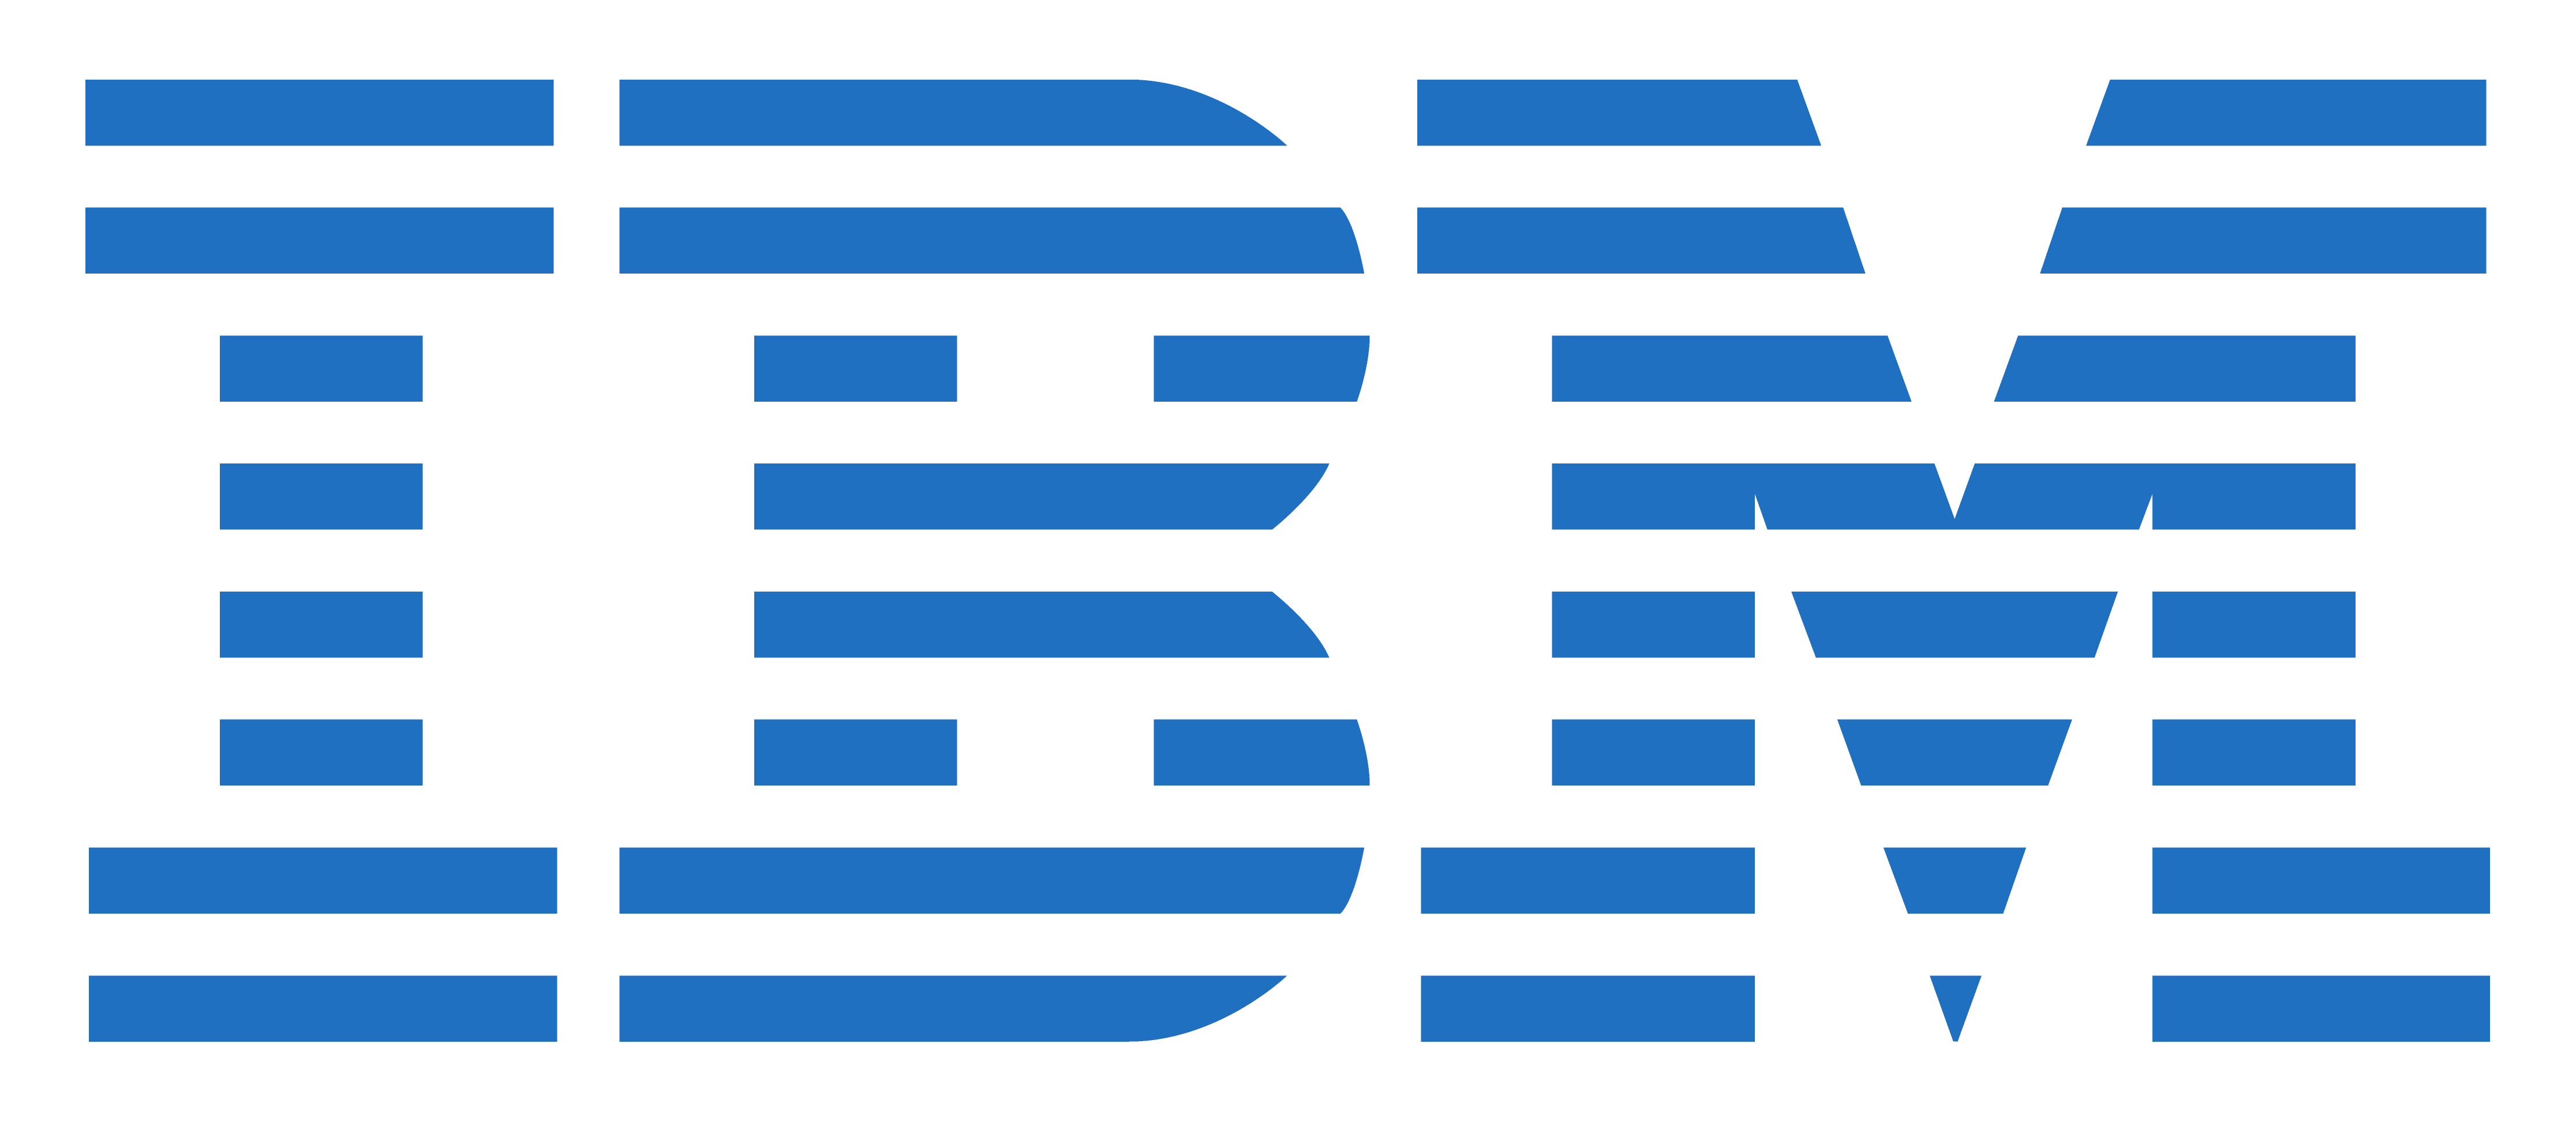 logo: IBM